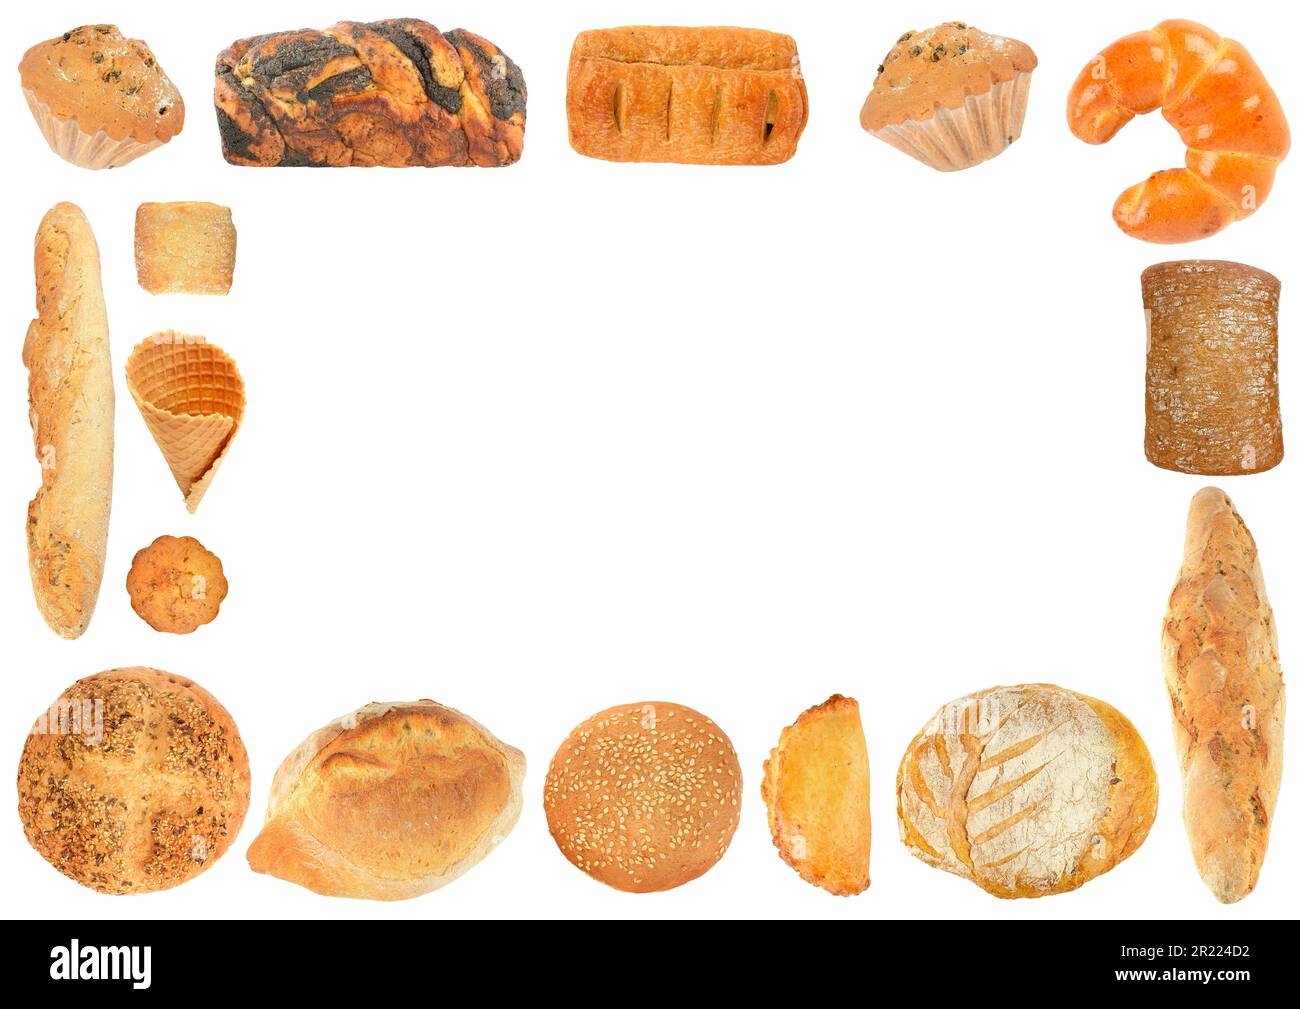 Placez les produits de pain sucré sous forme de cadre isolé sur fond blanc Banque D'Images